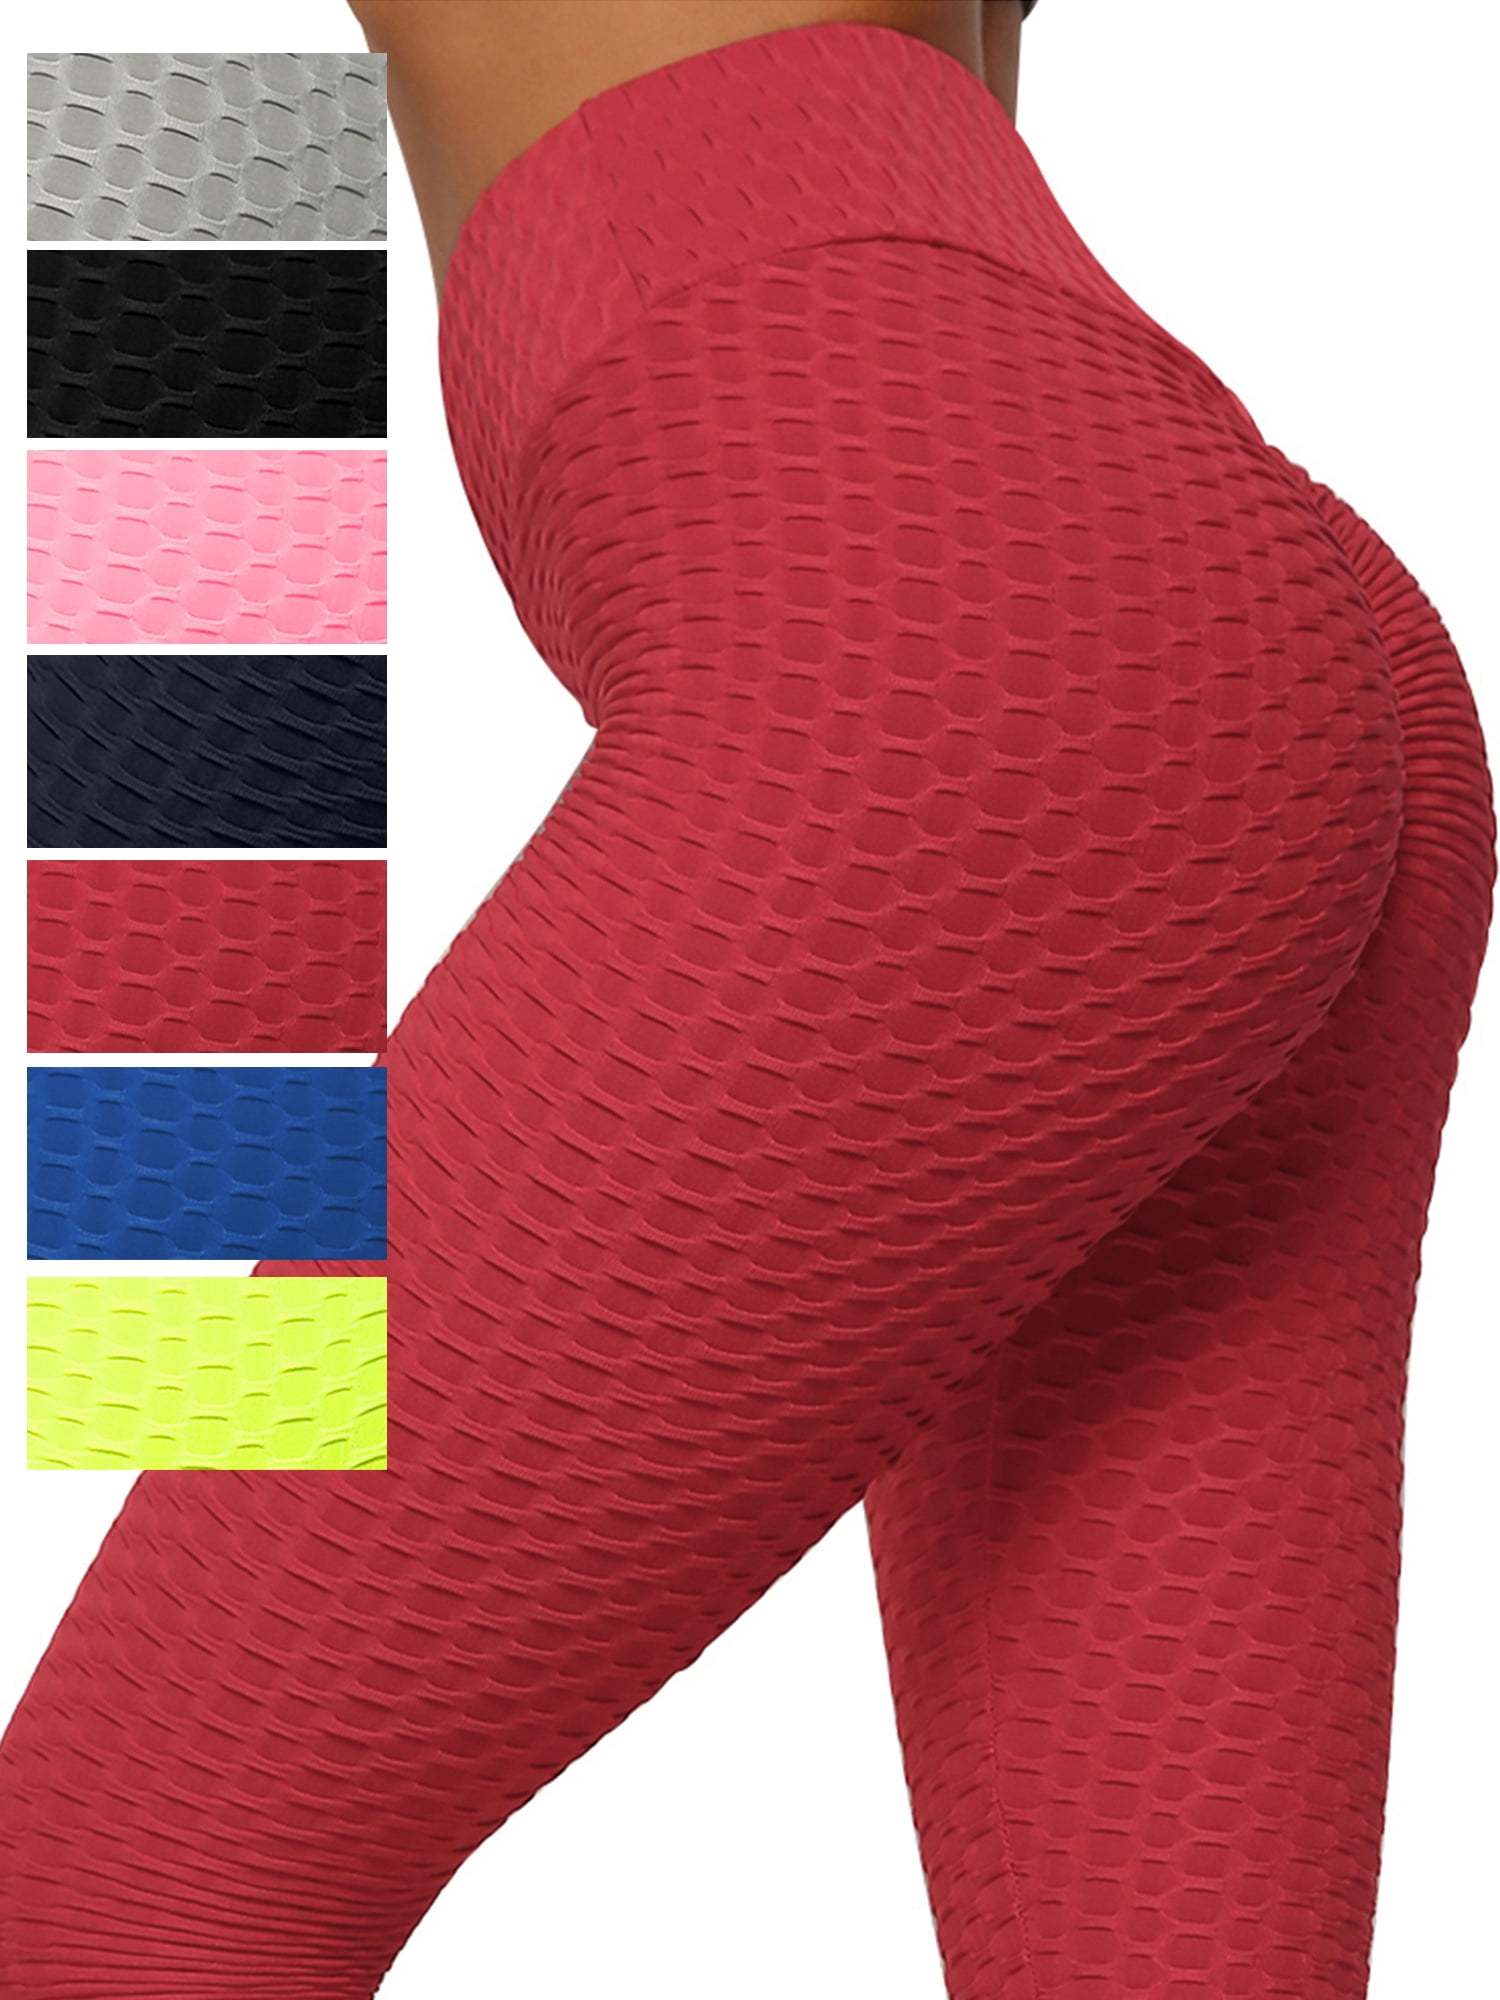 DODOING Scrunch Butt Yoga Pants High Waisted Textured Butt Lift